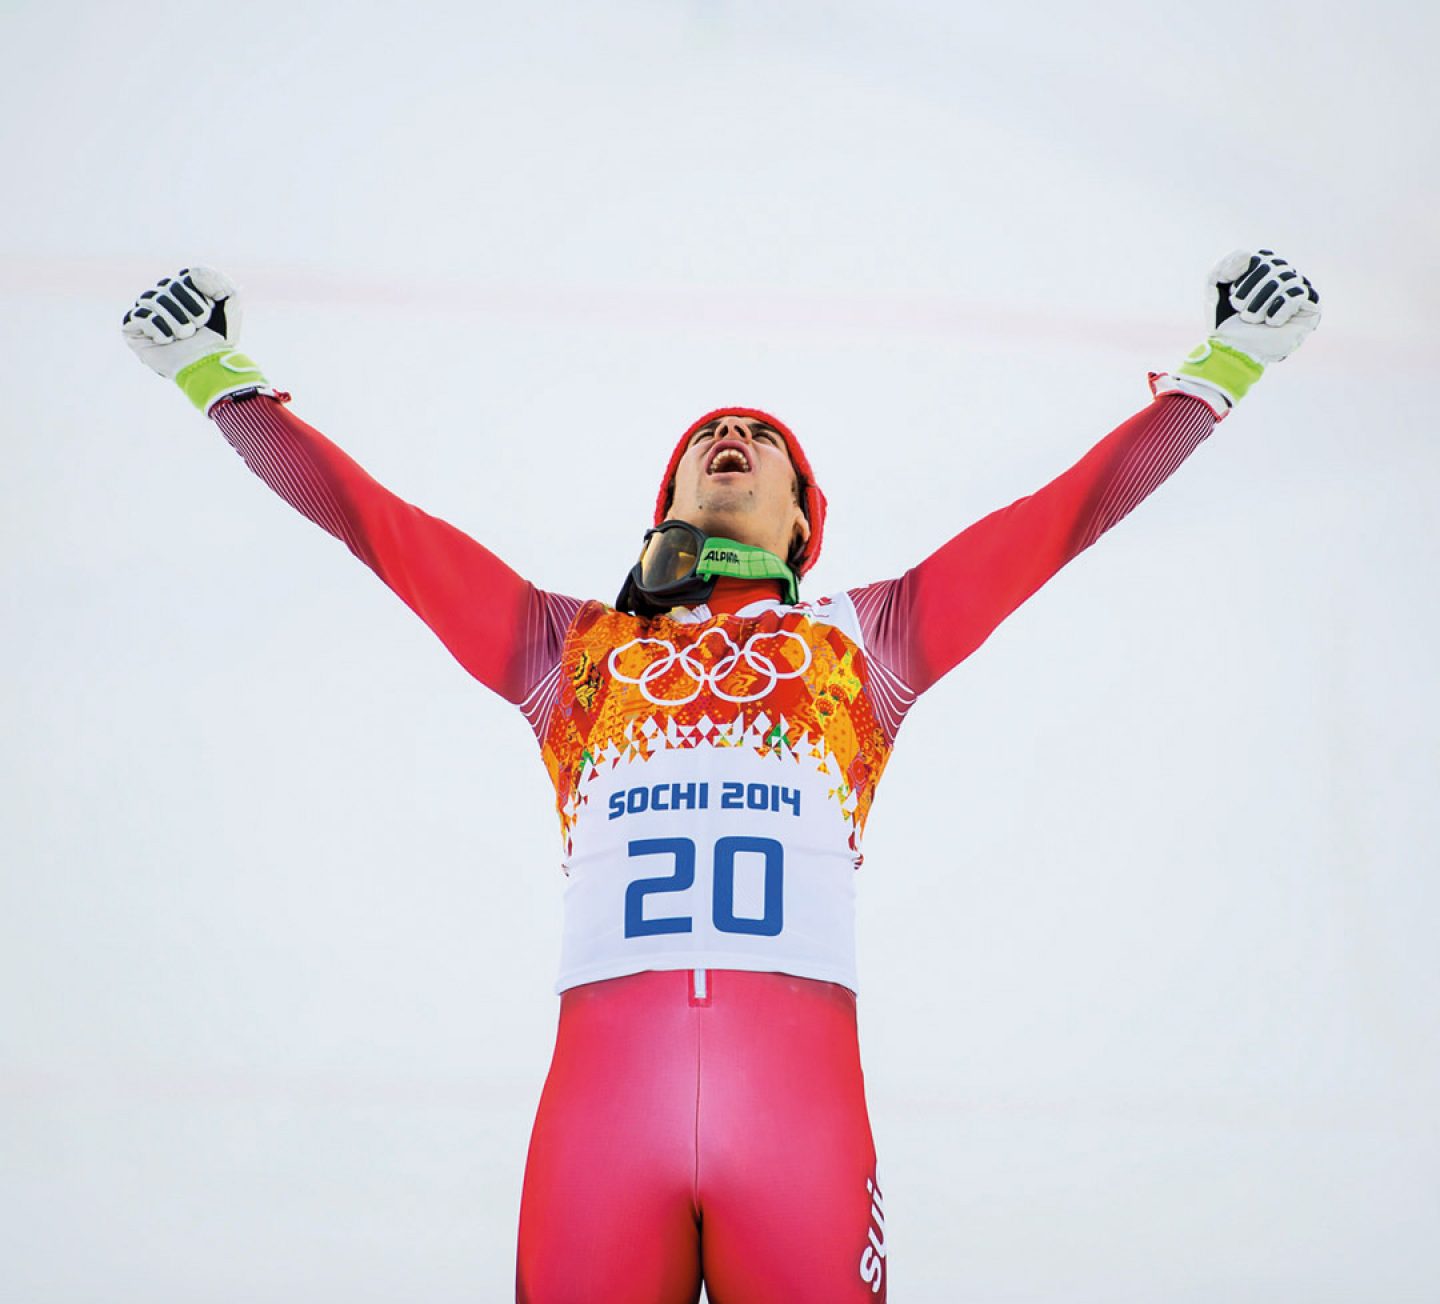 Am 25. Februar 2007 fuhr er in Garmisch-Partenkirchen auf den 16. Rang und holte sich seine ersten Weltcuppunkte. 